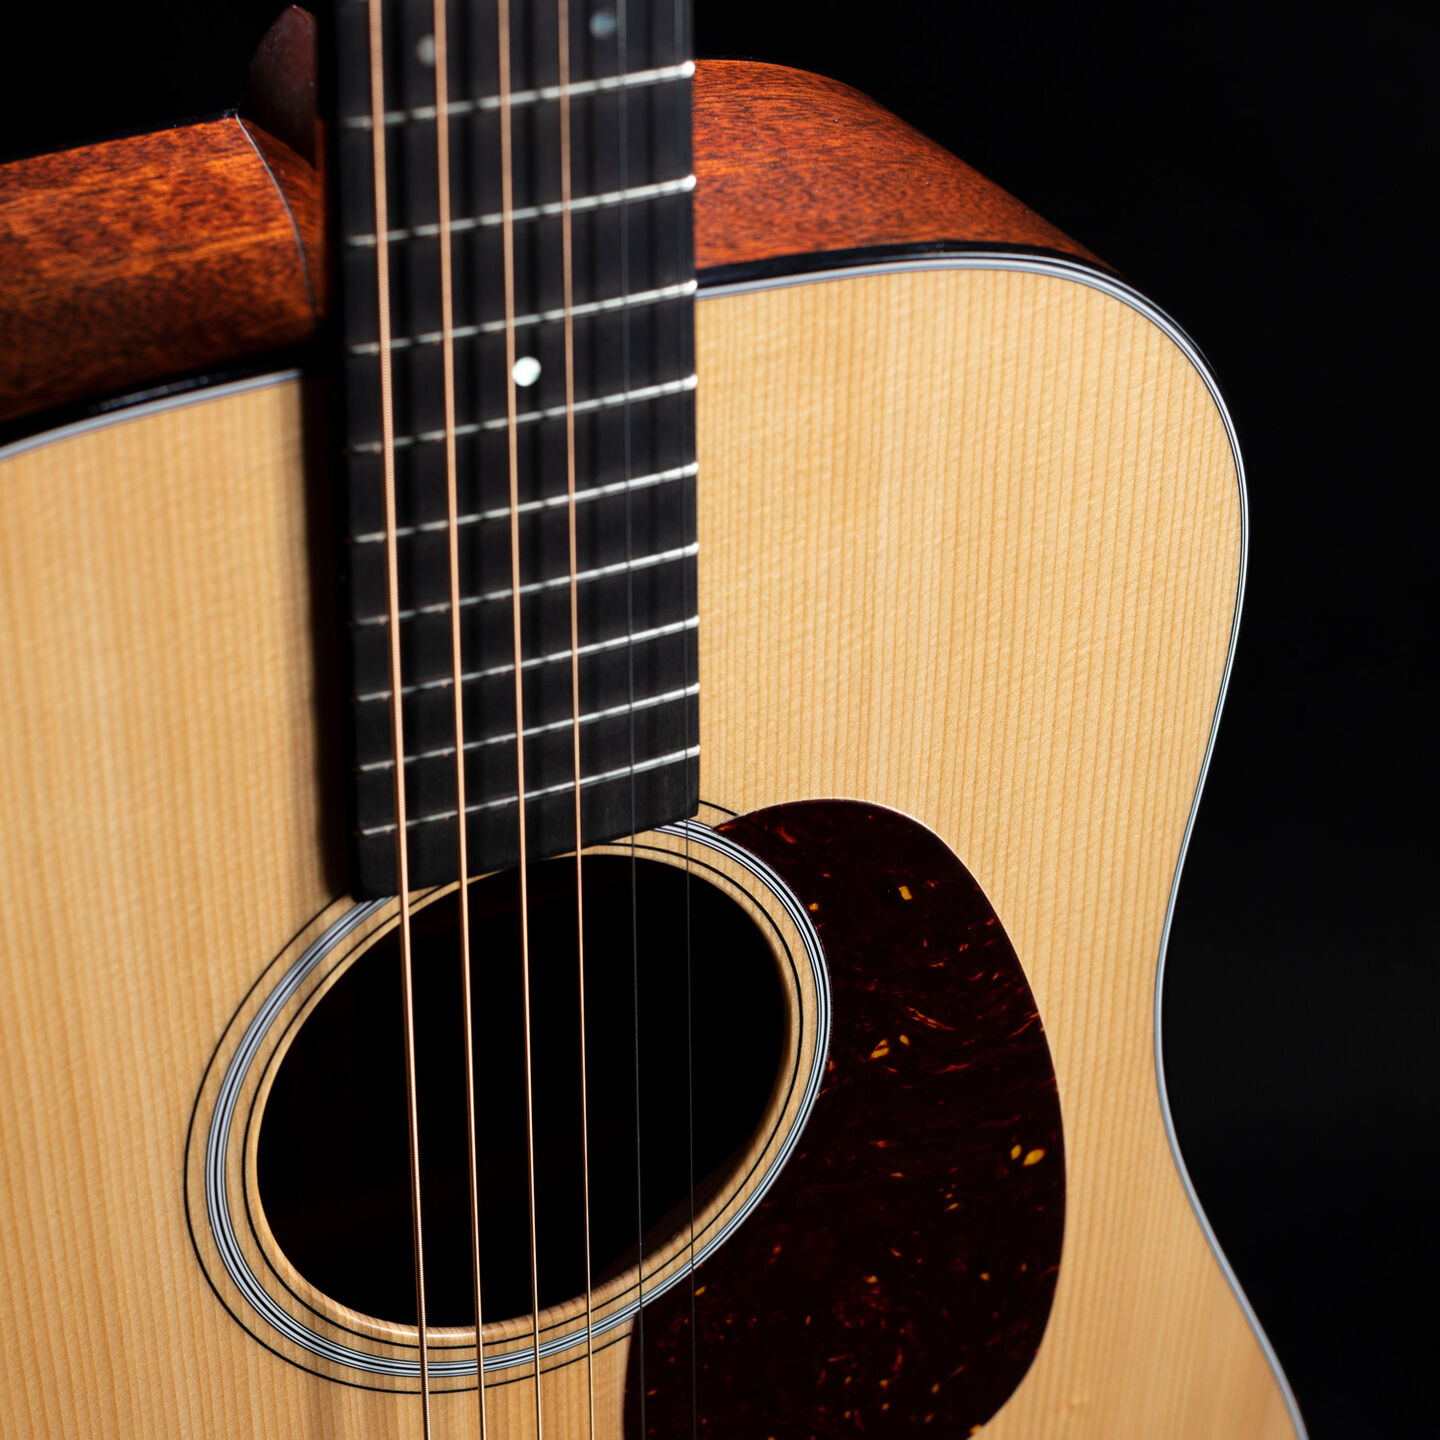 Closeup of an acoustic guitar